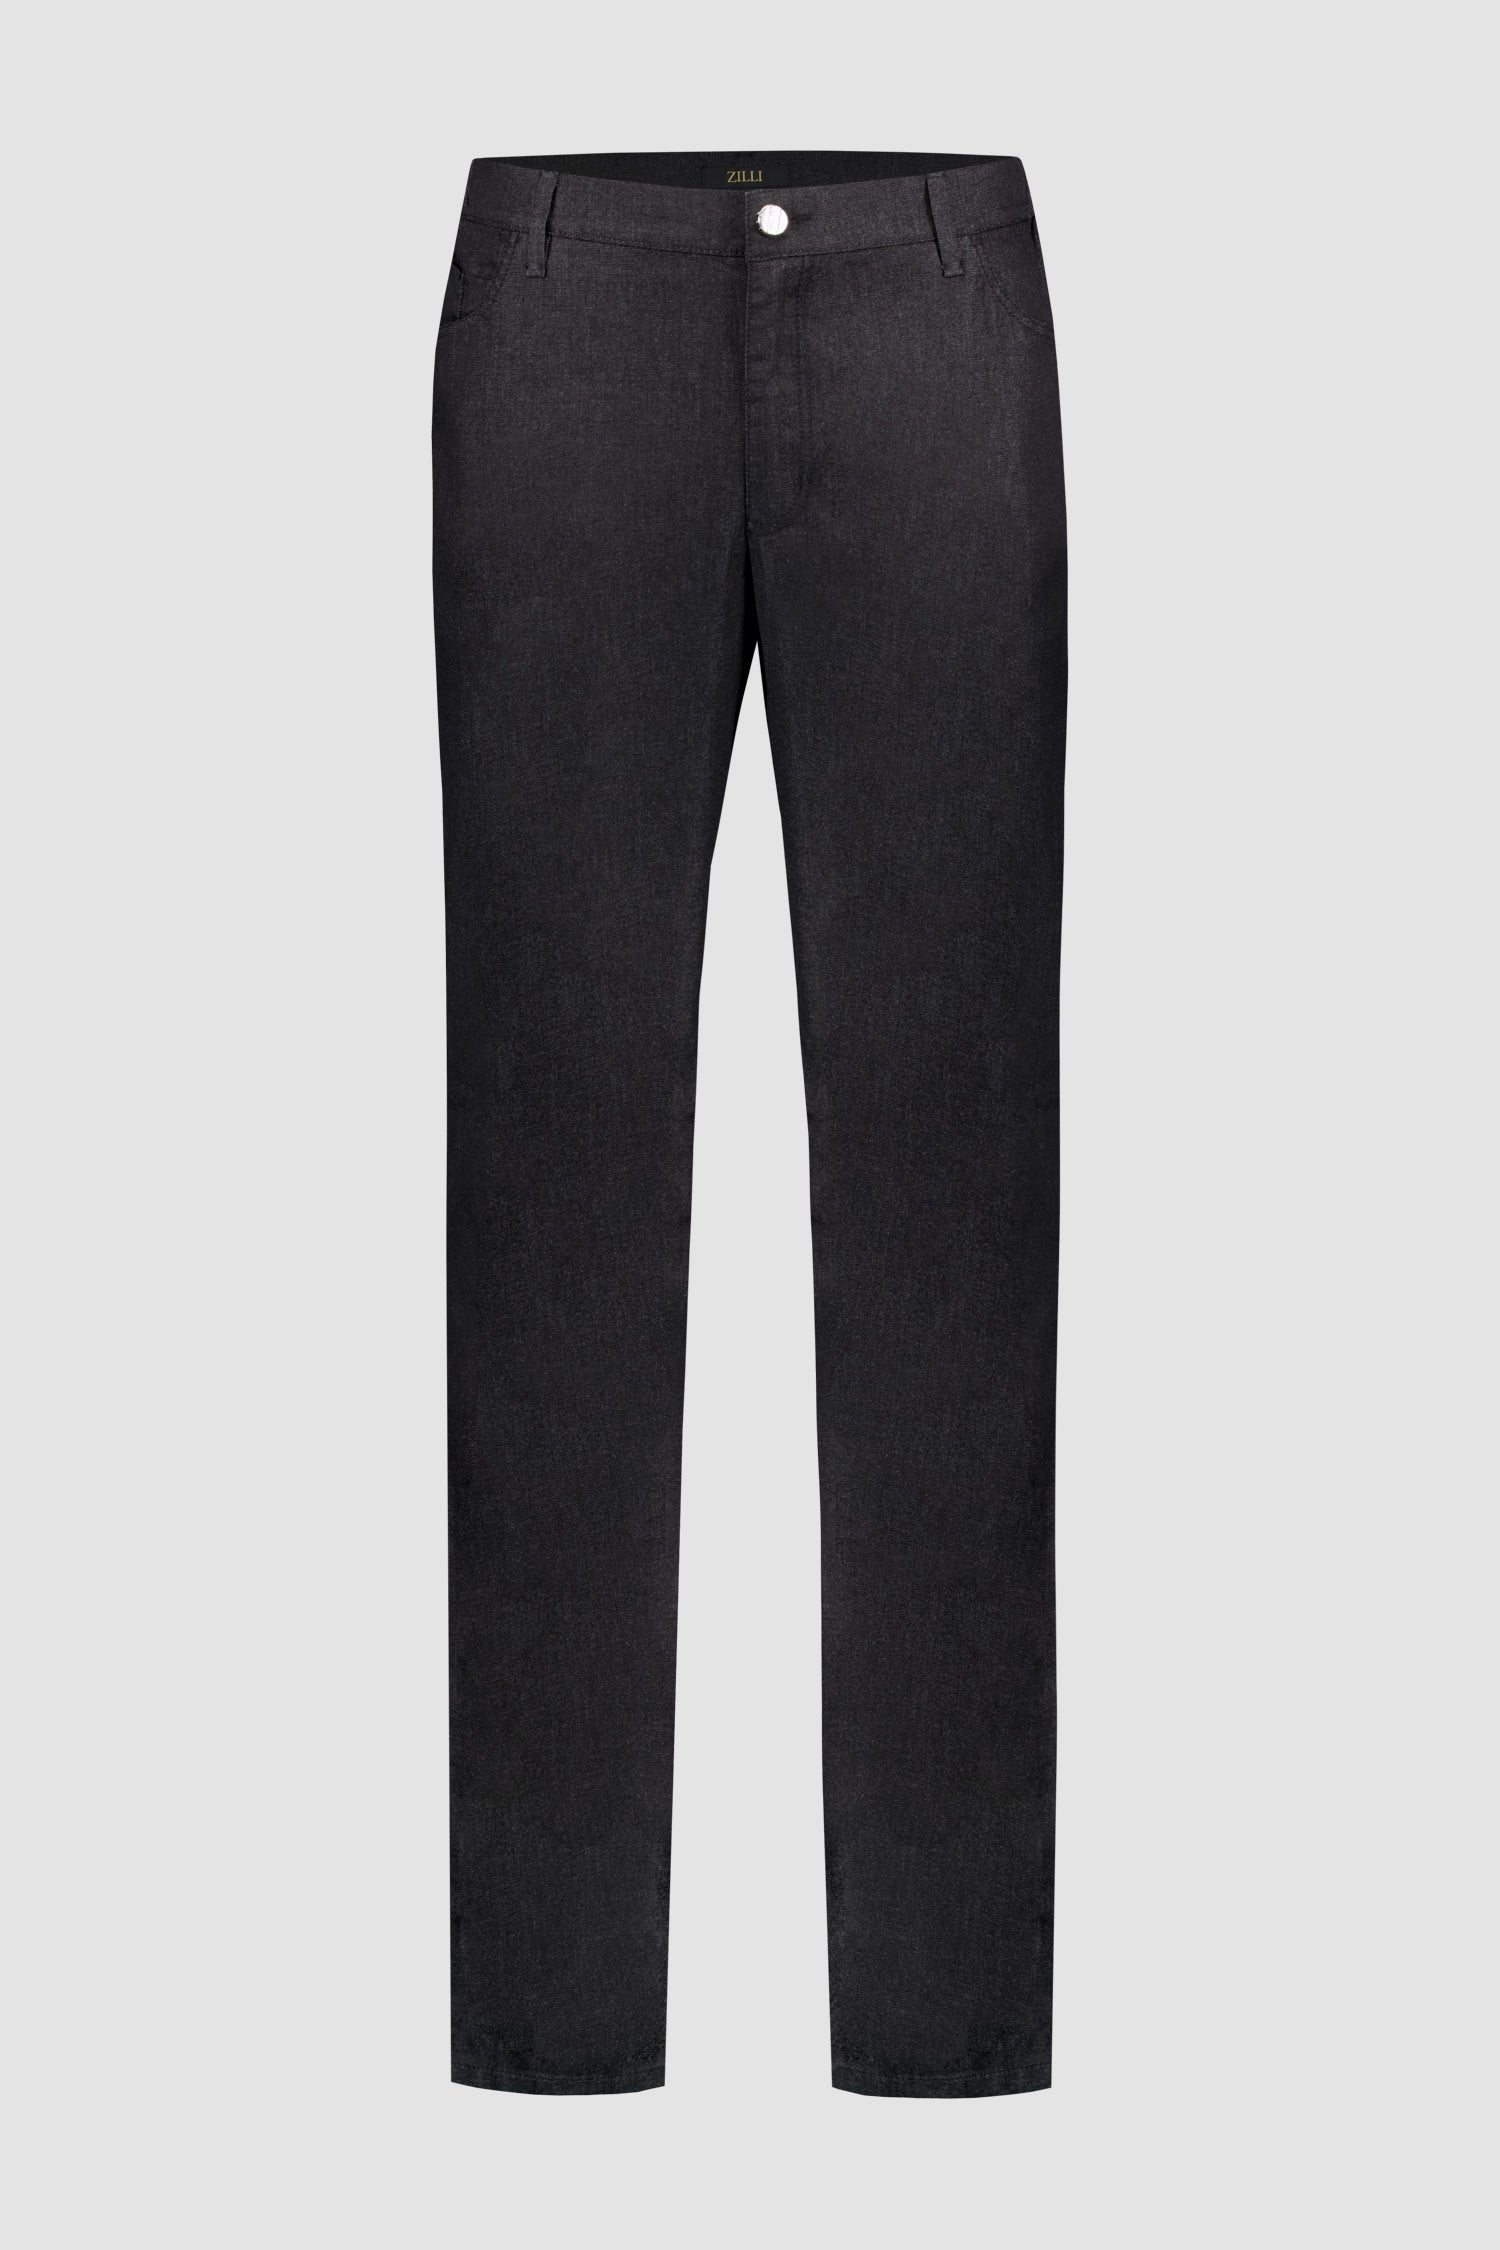 Zilli Black Slim Fit Denim Ultralight Griffon Vertica Jeans